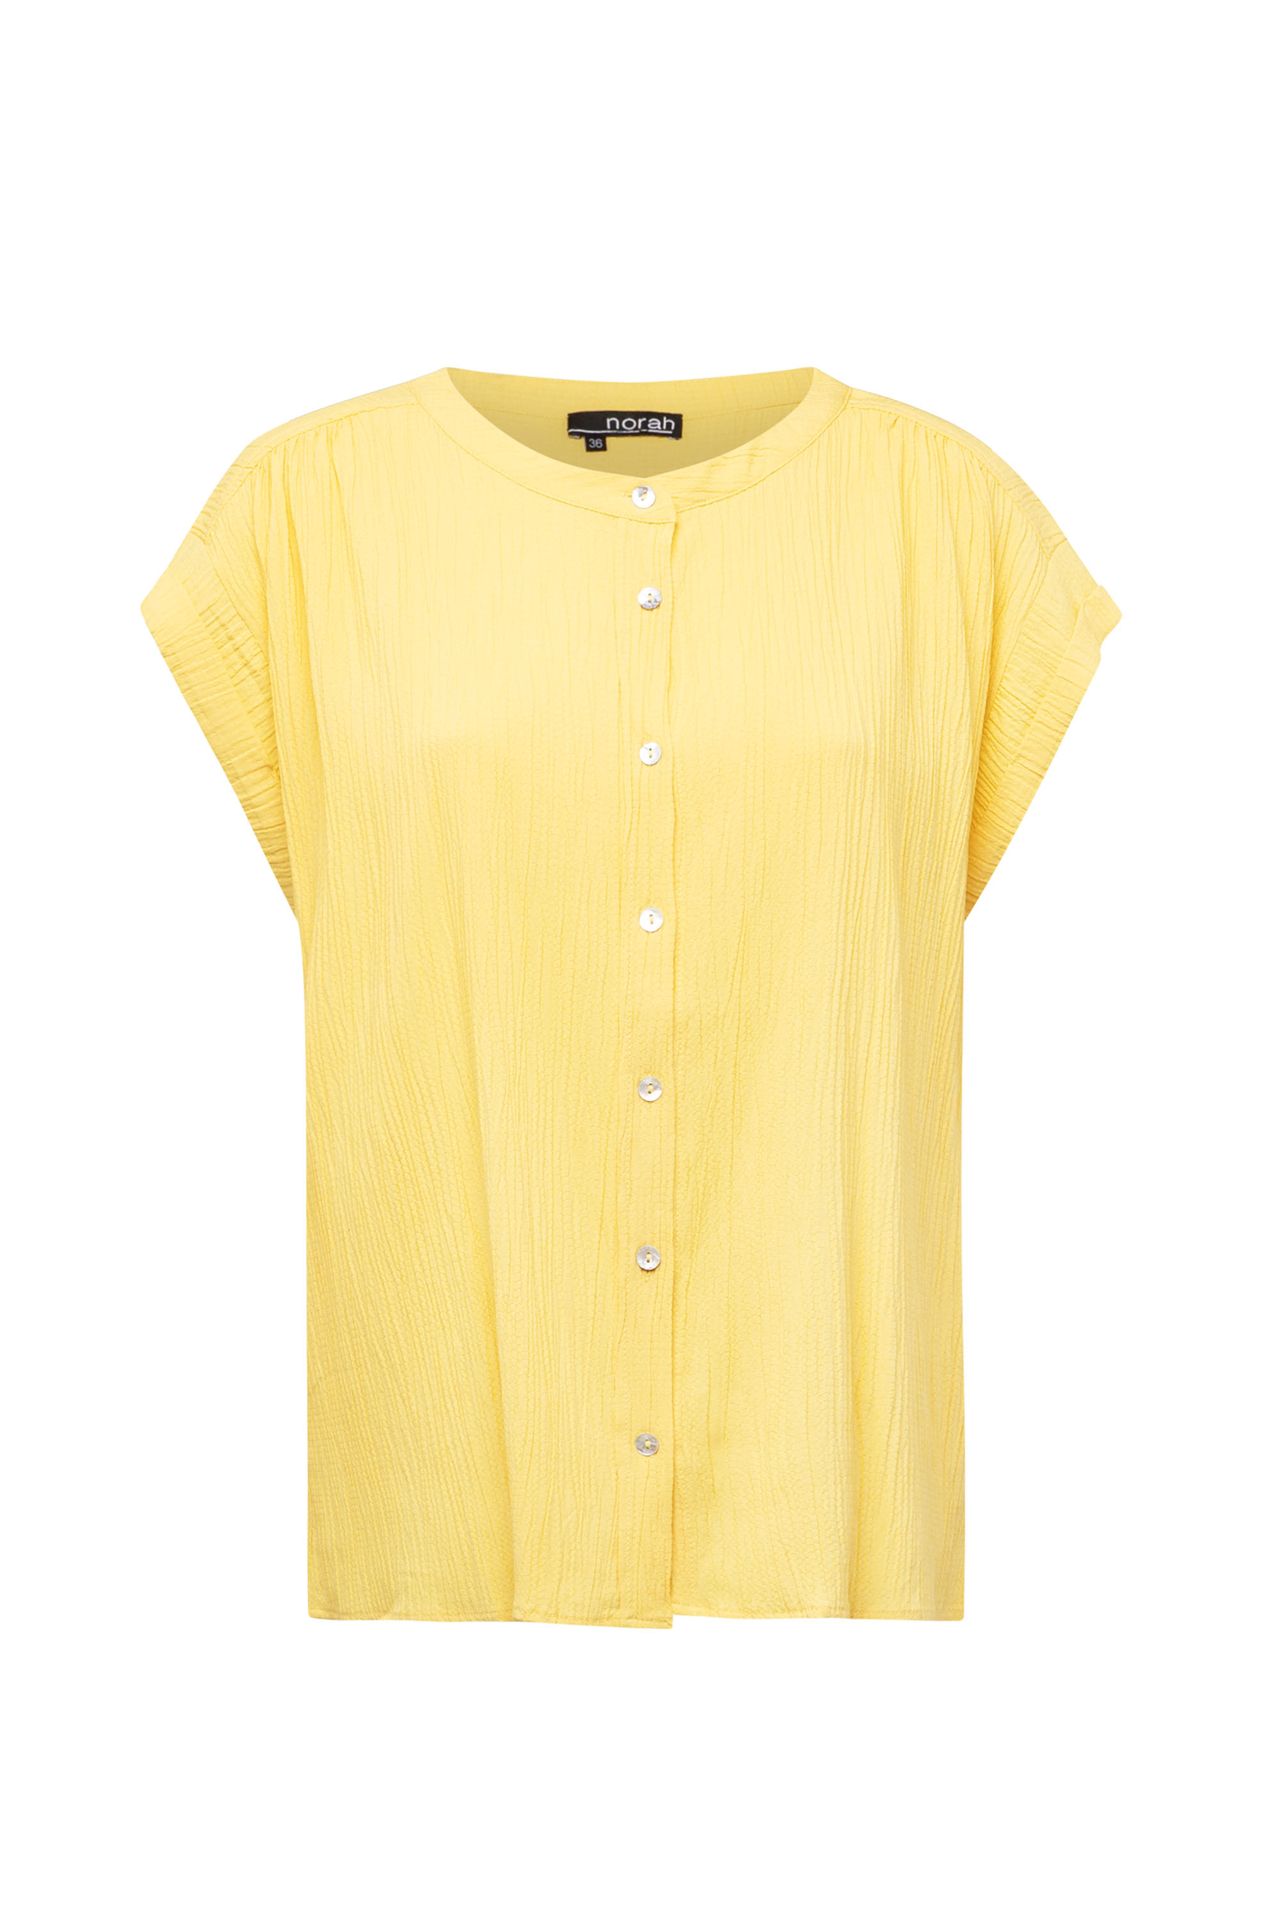 Norah Gele blouse yellow 213675-300